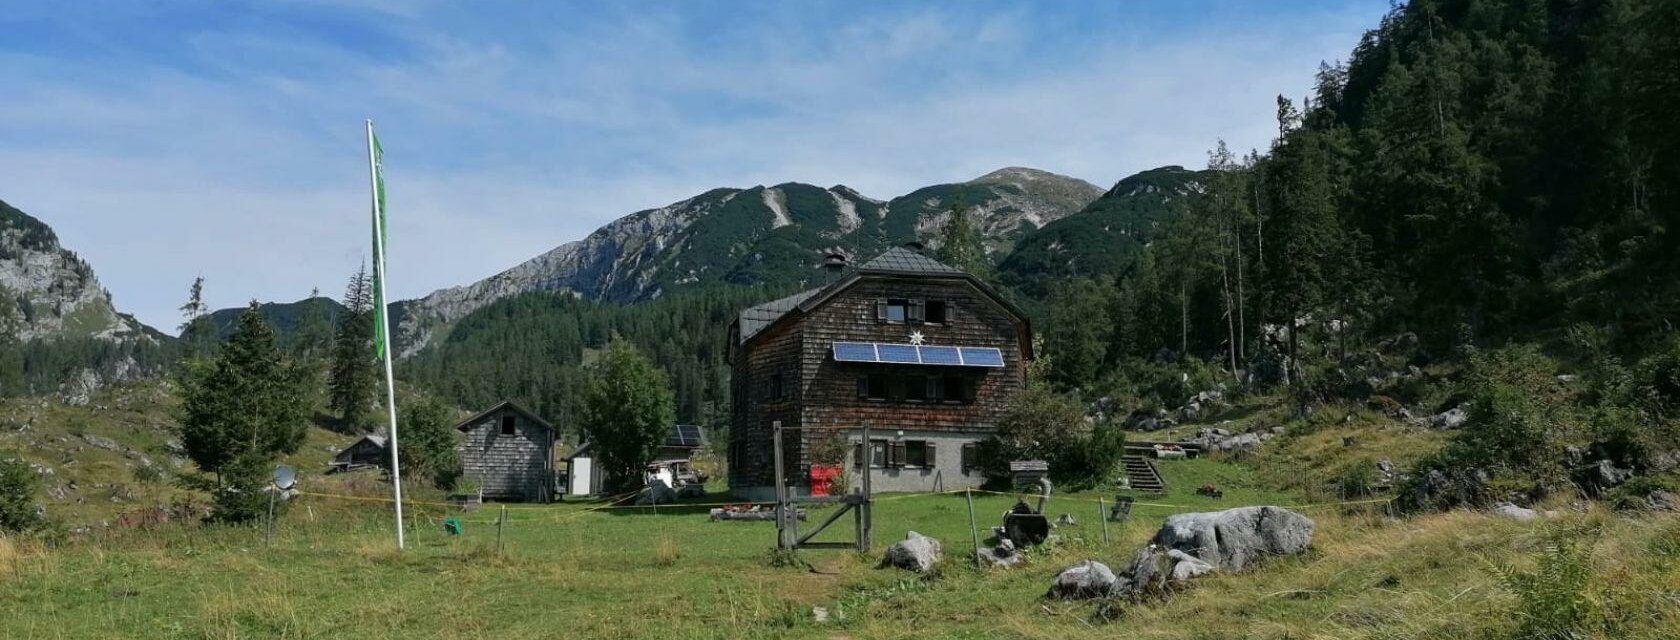 Ischler Hütte, Altaussee, Außenansicht